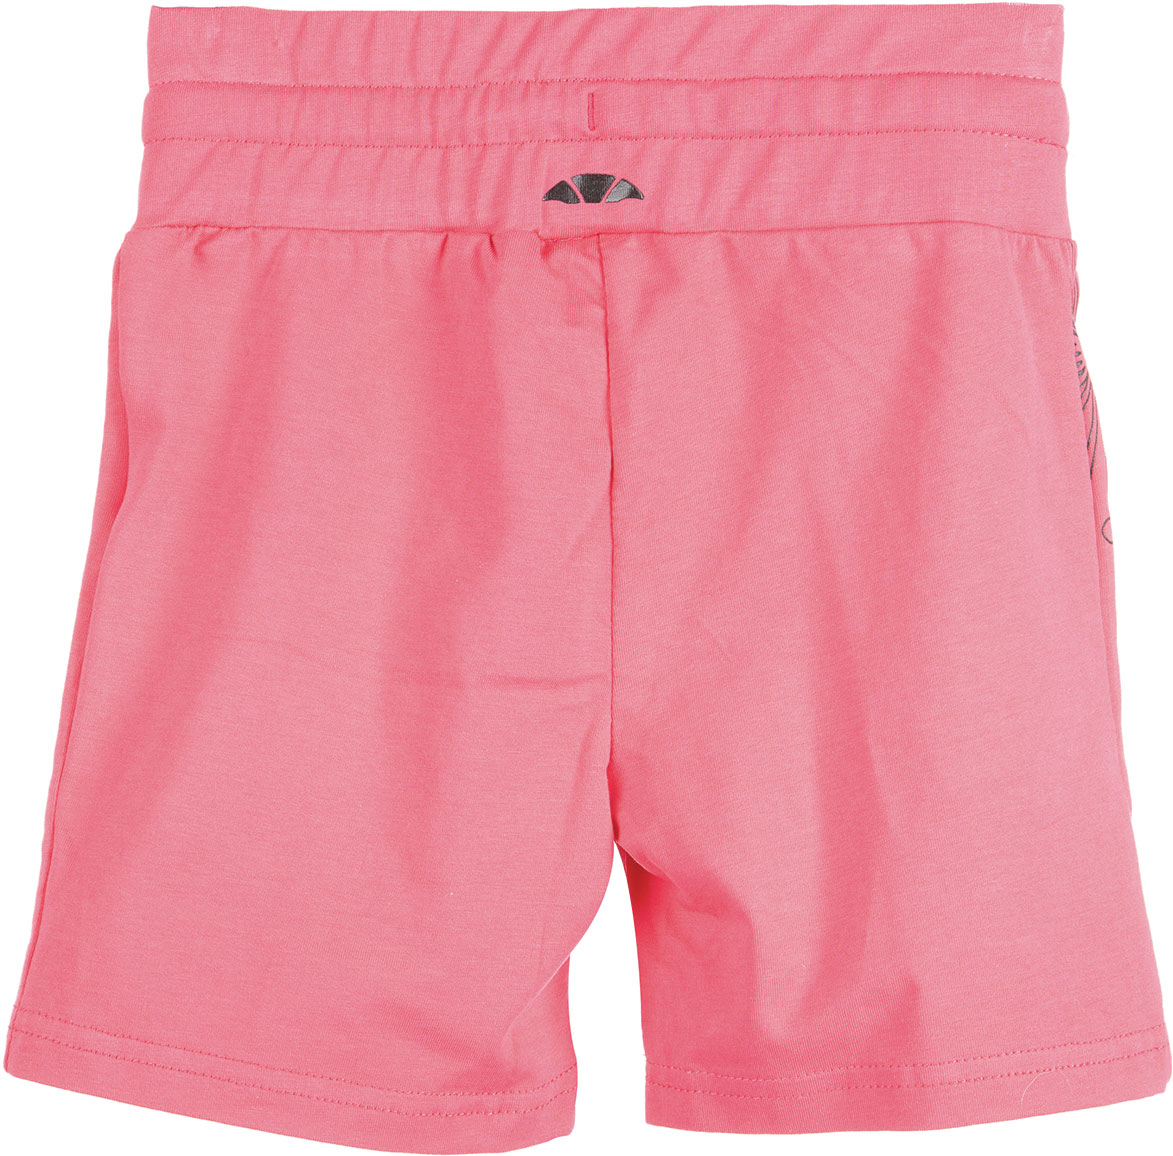 Children's shorts - Children's shorts